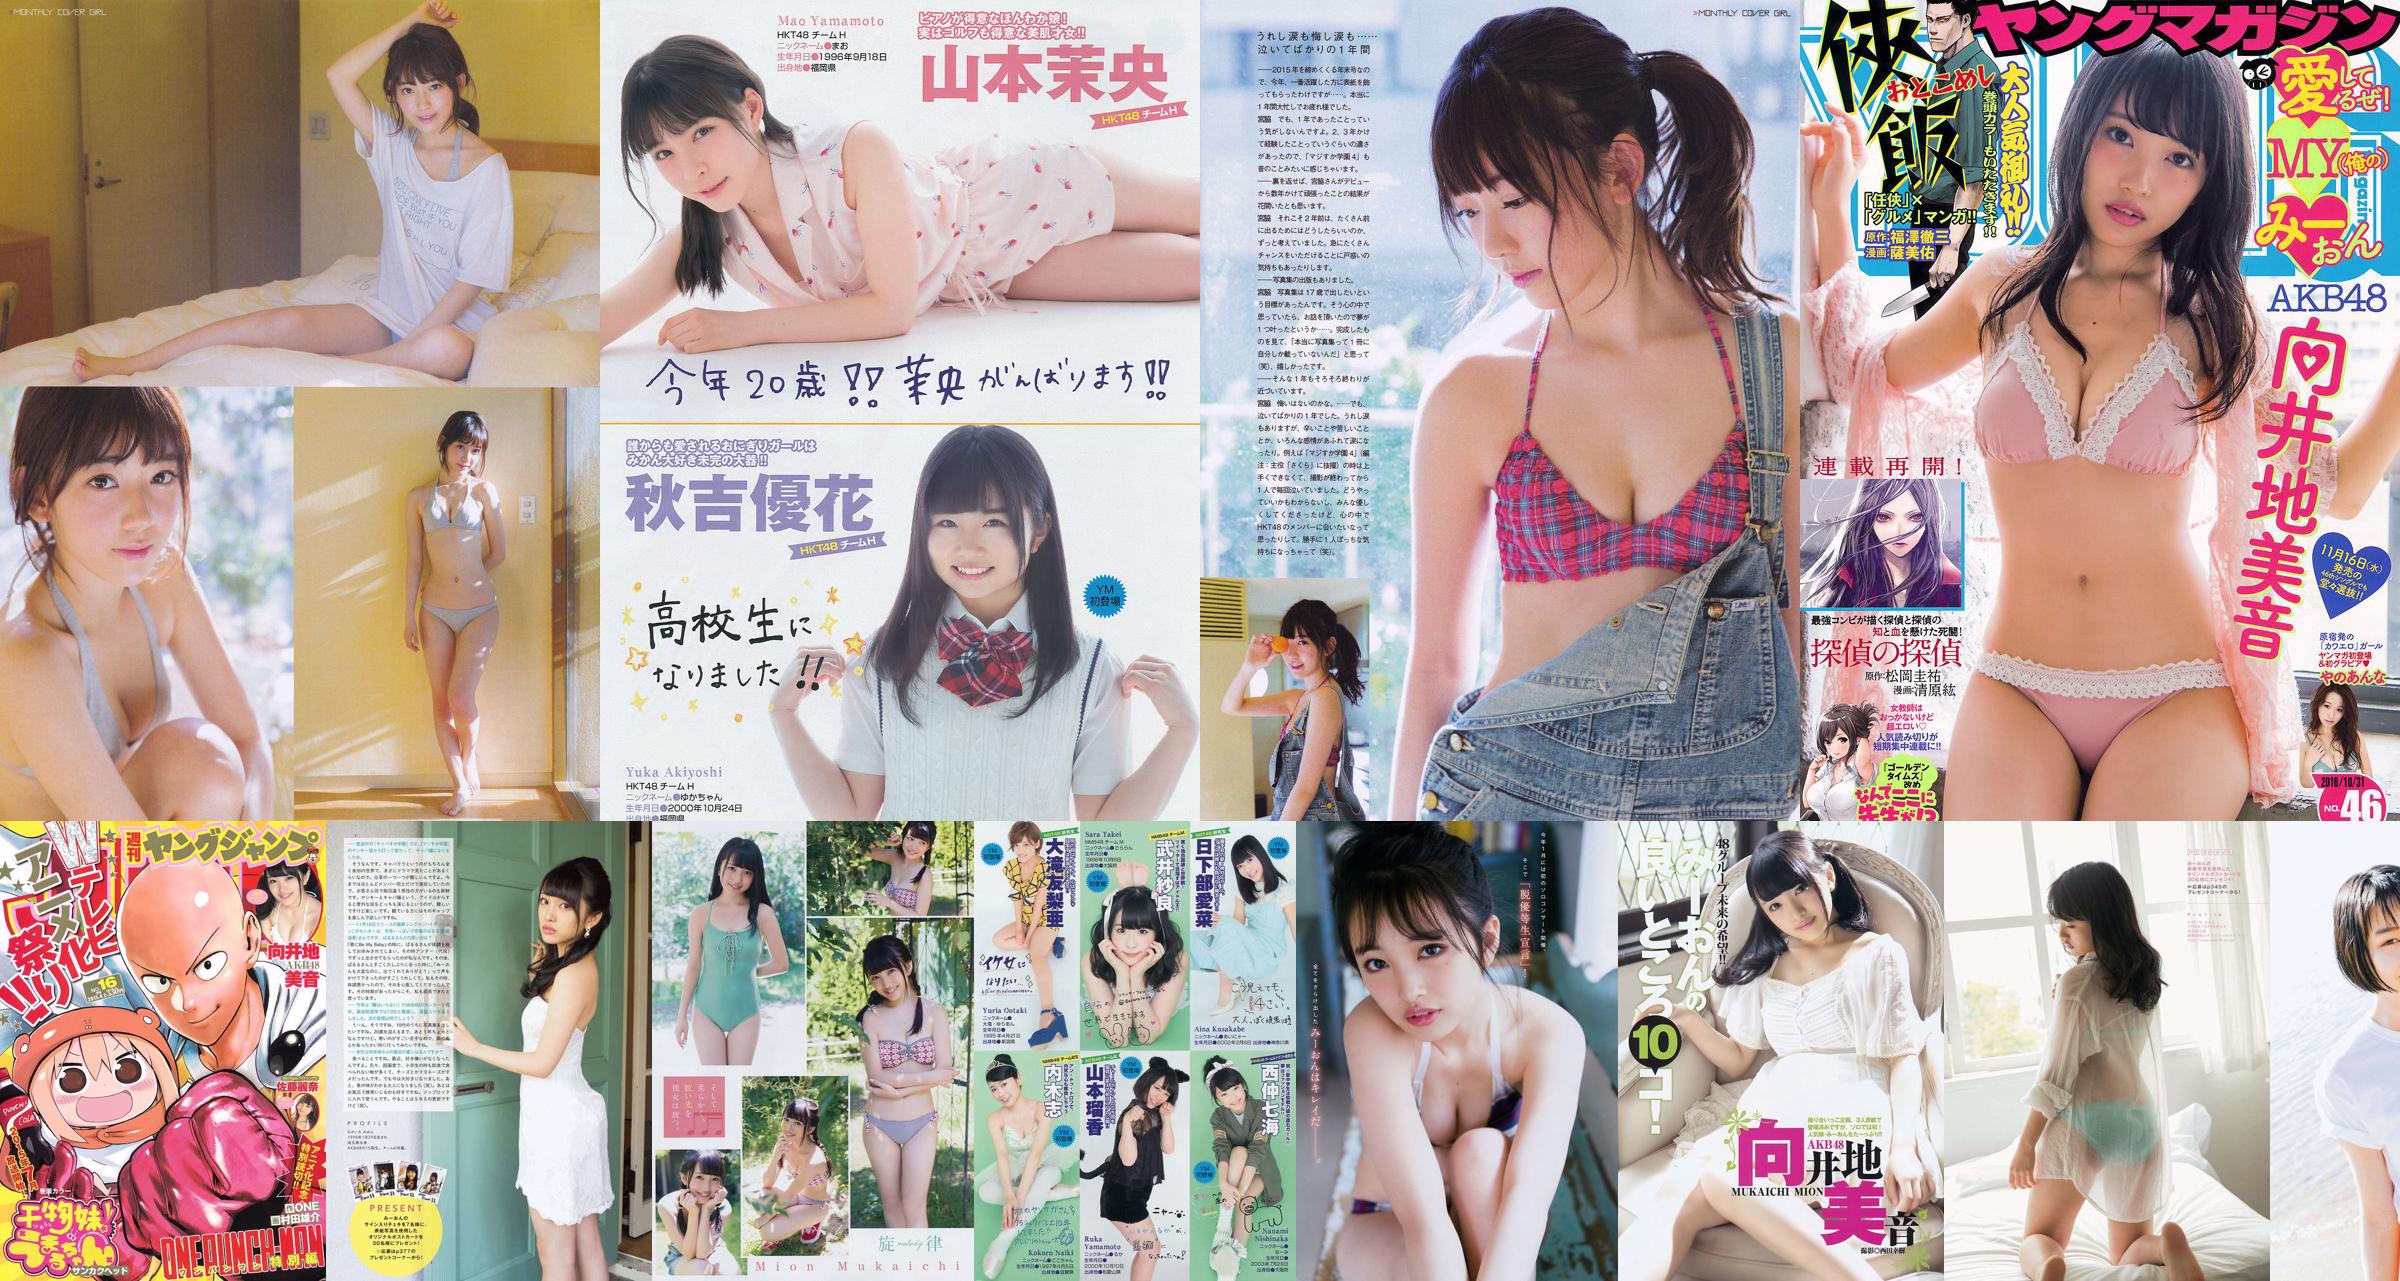 向井地美音 佐藤麗奈 [Weekly Young Jump] 2015年No.16 写真杂志 No.e42363 ページ1